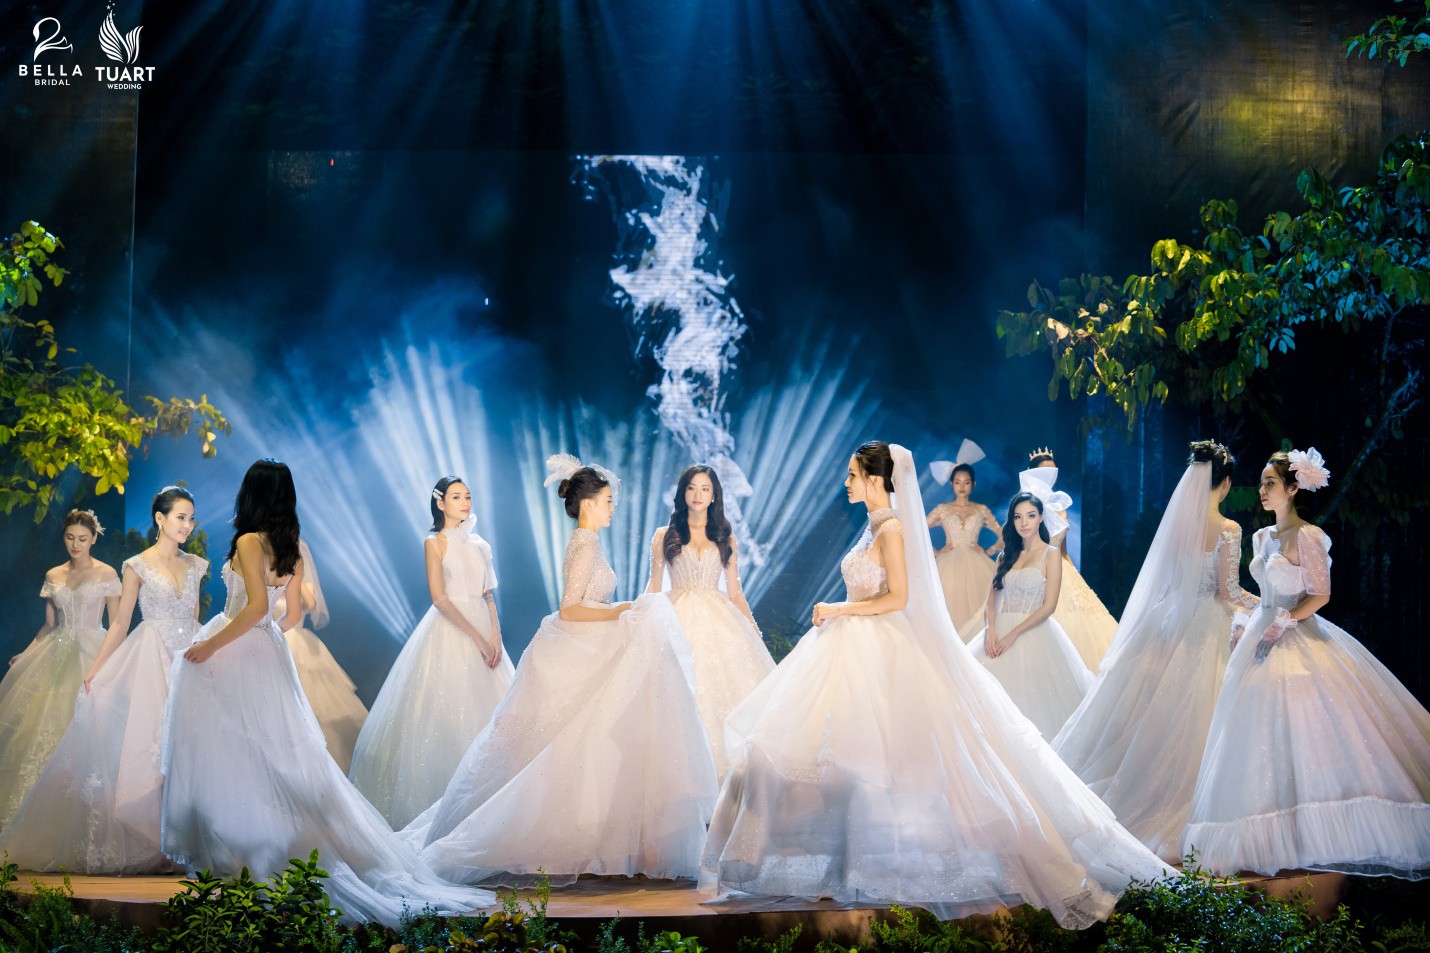 Hoa hậu Lương Thùy Linh hóa “nàng dâu” yêu kiều dưới ống kính của TuArt Wedding